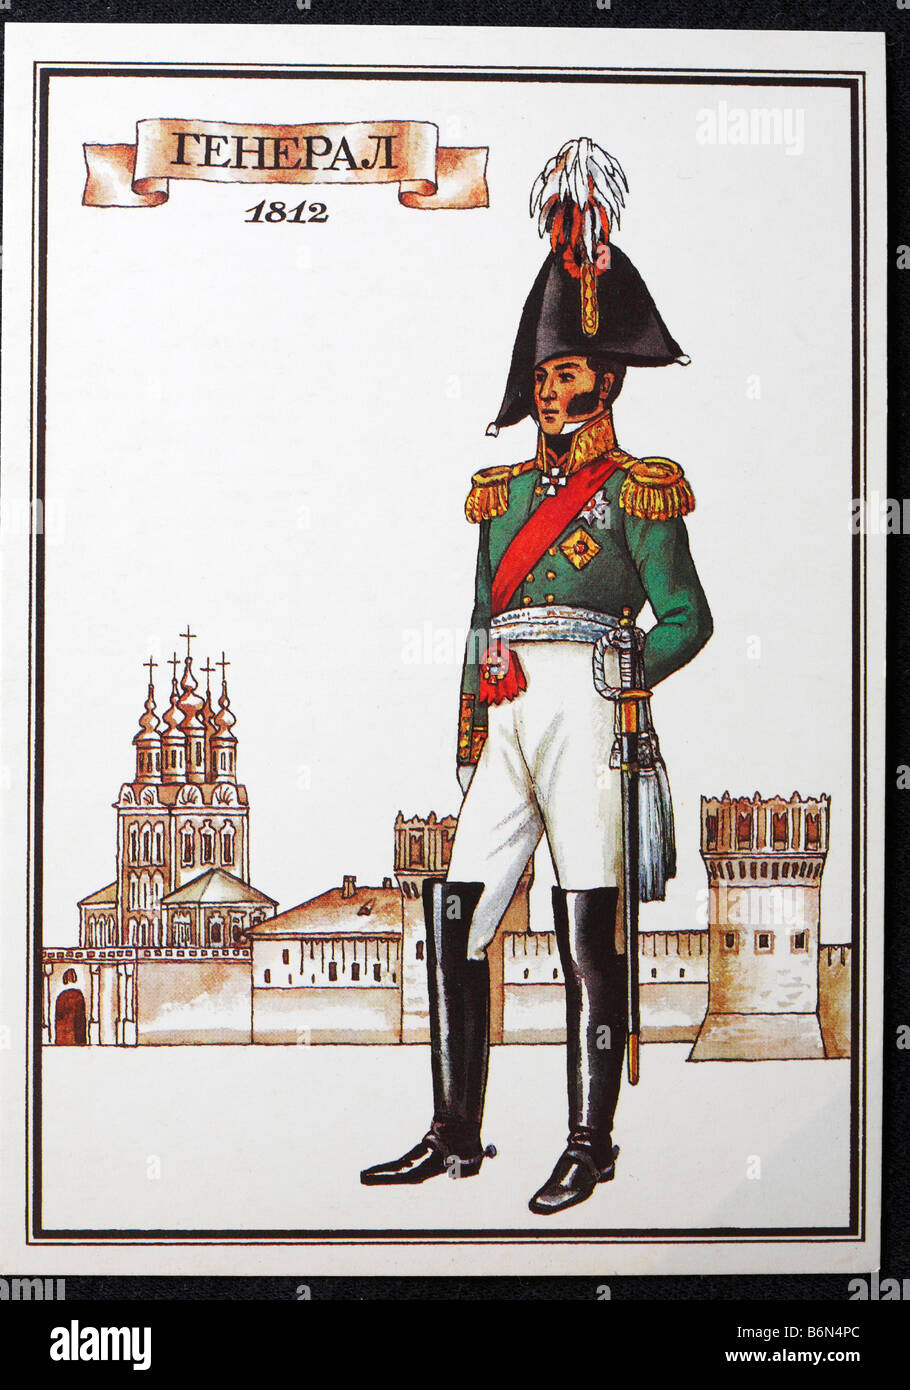 L'uniforme de général de l'armée russe (1811), carte postale, URSS, 1986 Banque D'Images